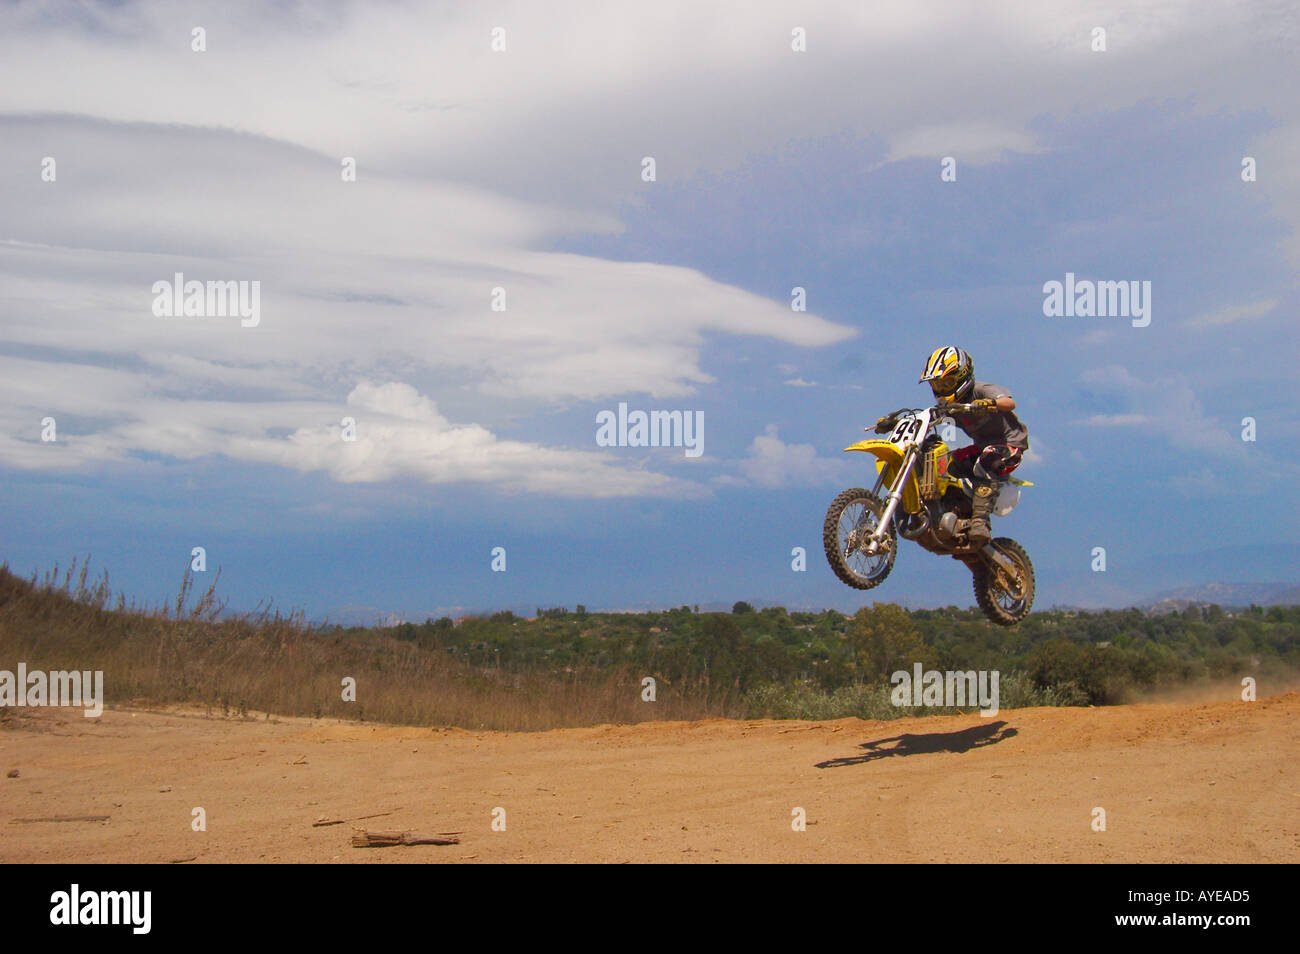 motorcycle dirt bike rider Stock Photo